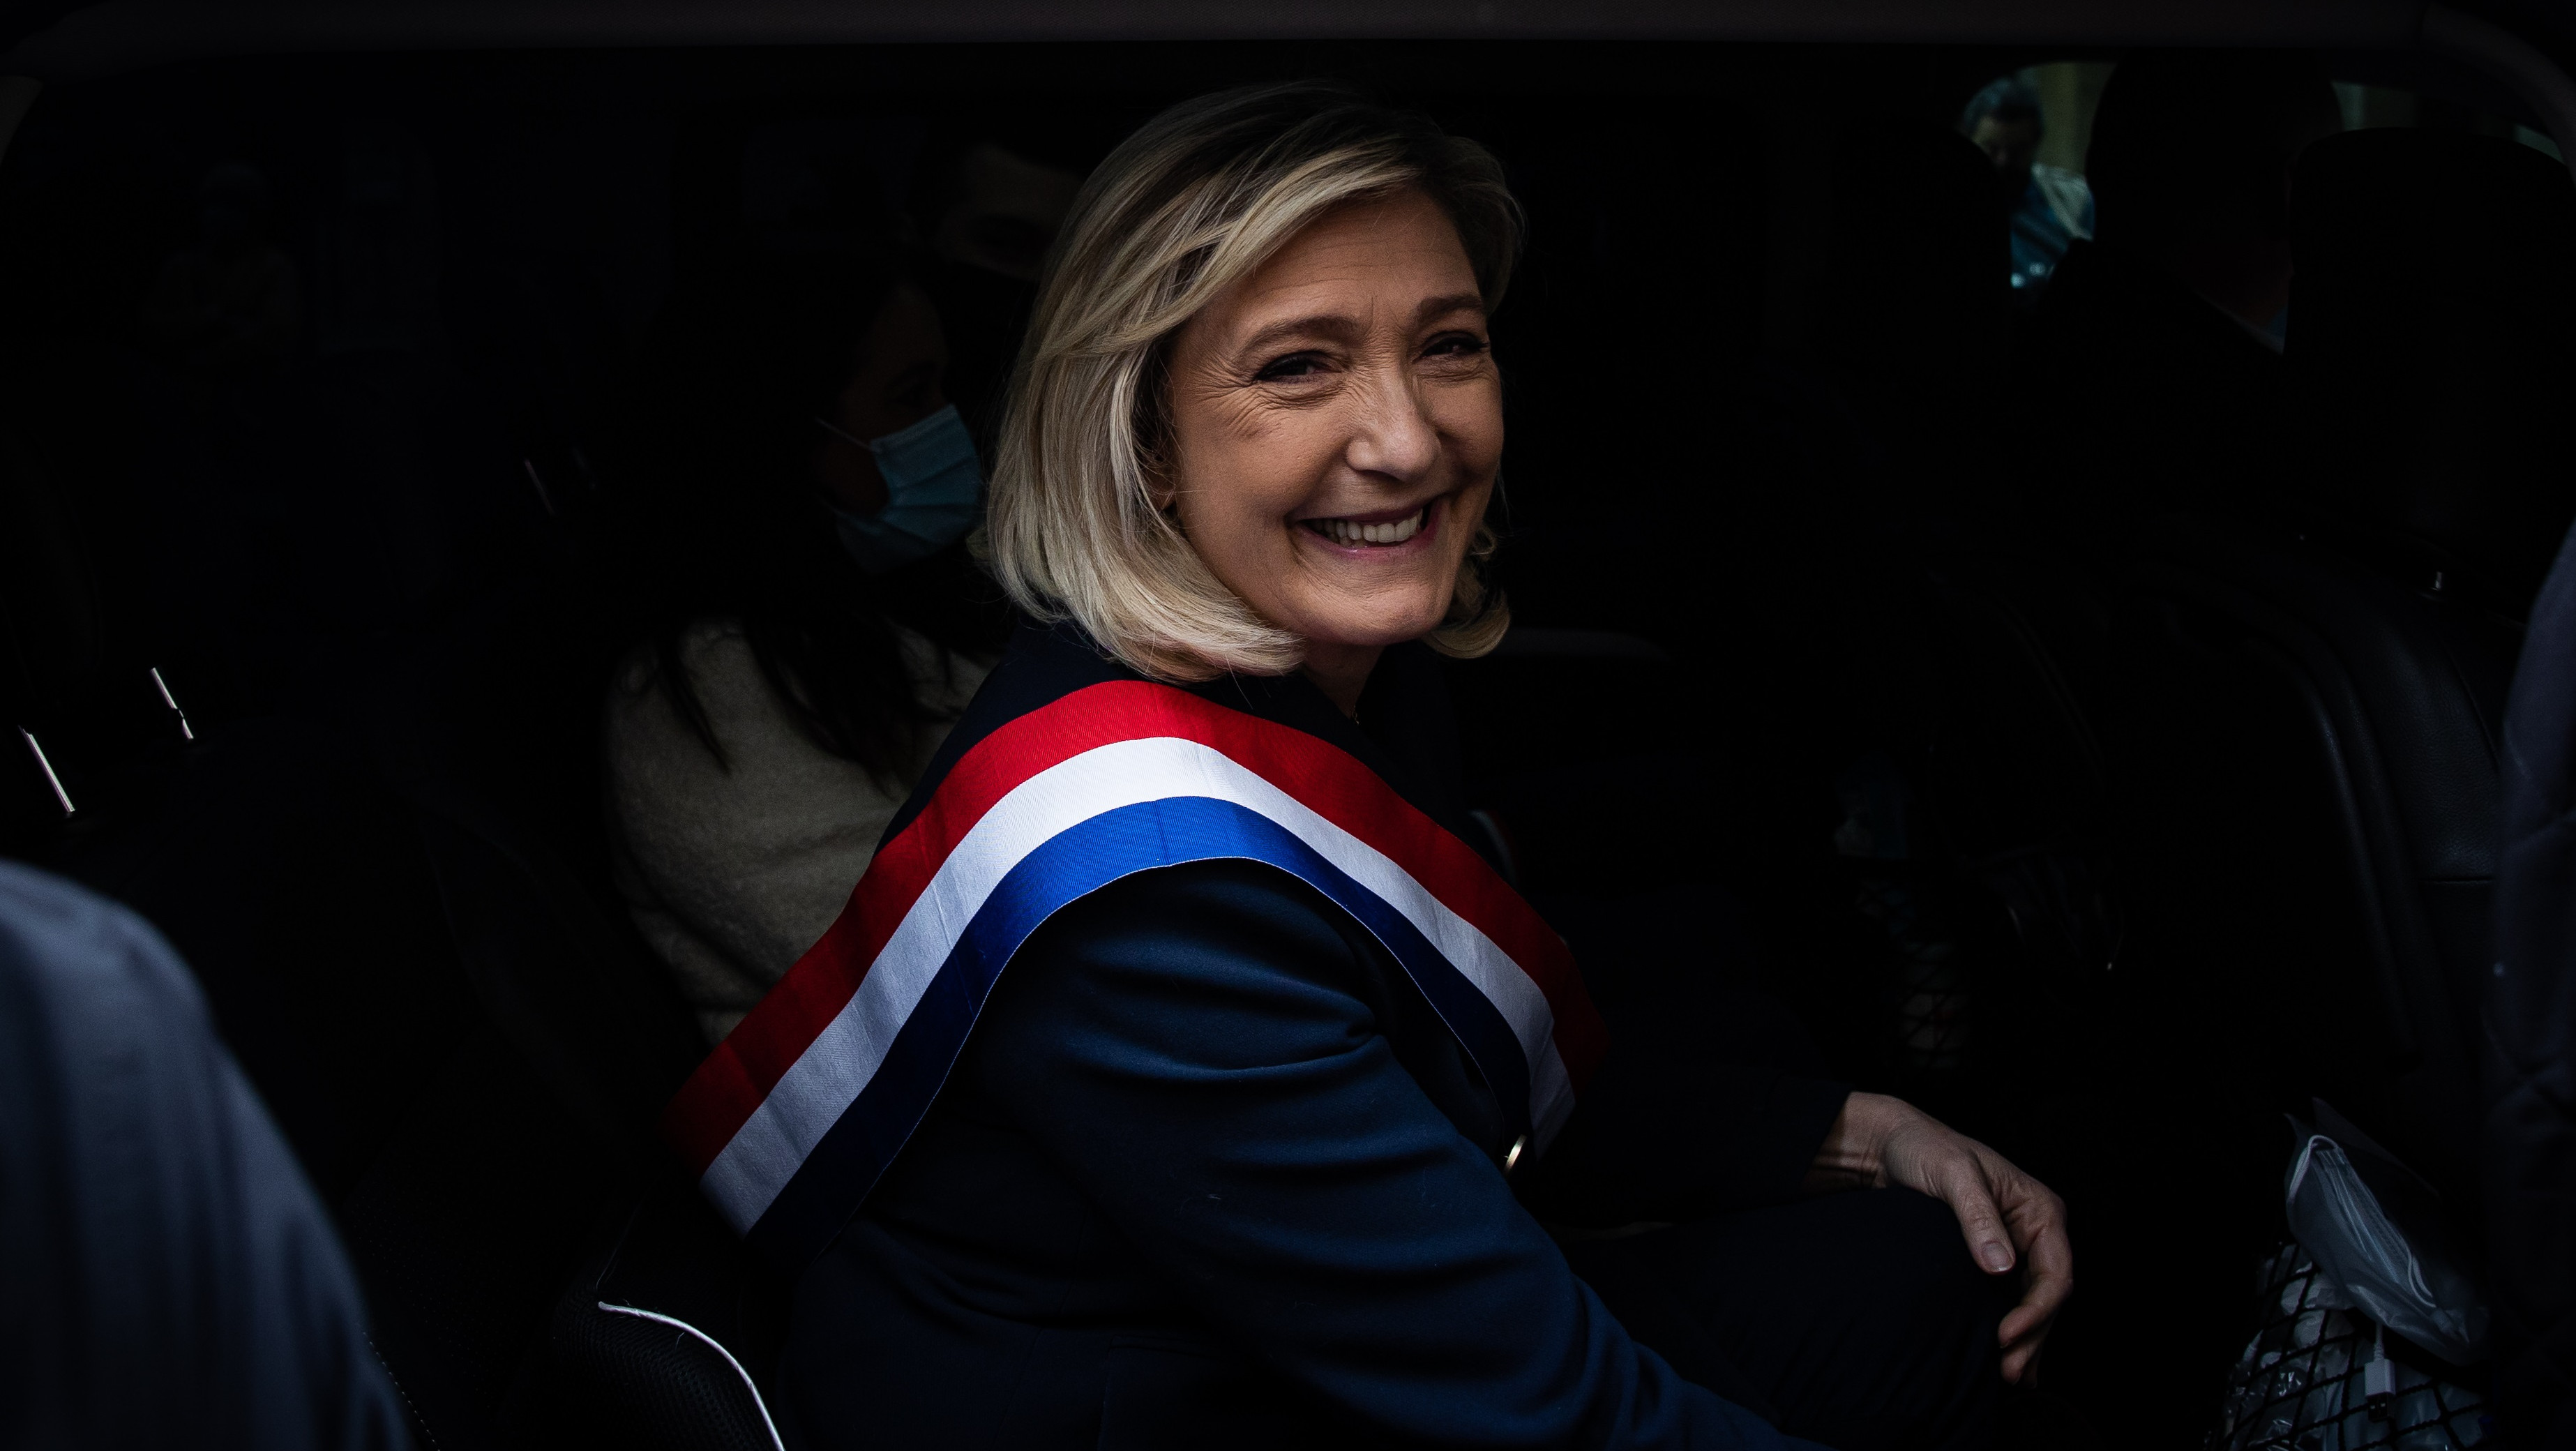 Le Pen no logra ninguna región en las elecciones de este domingo, según los primeros resultados